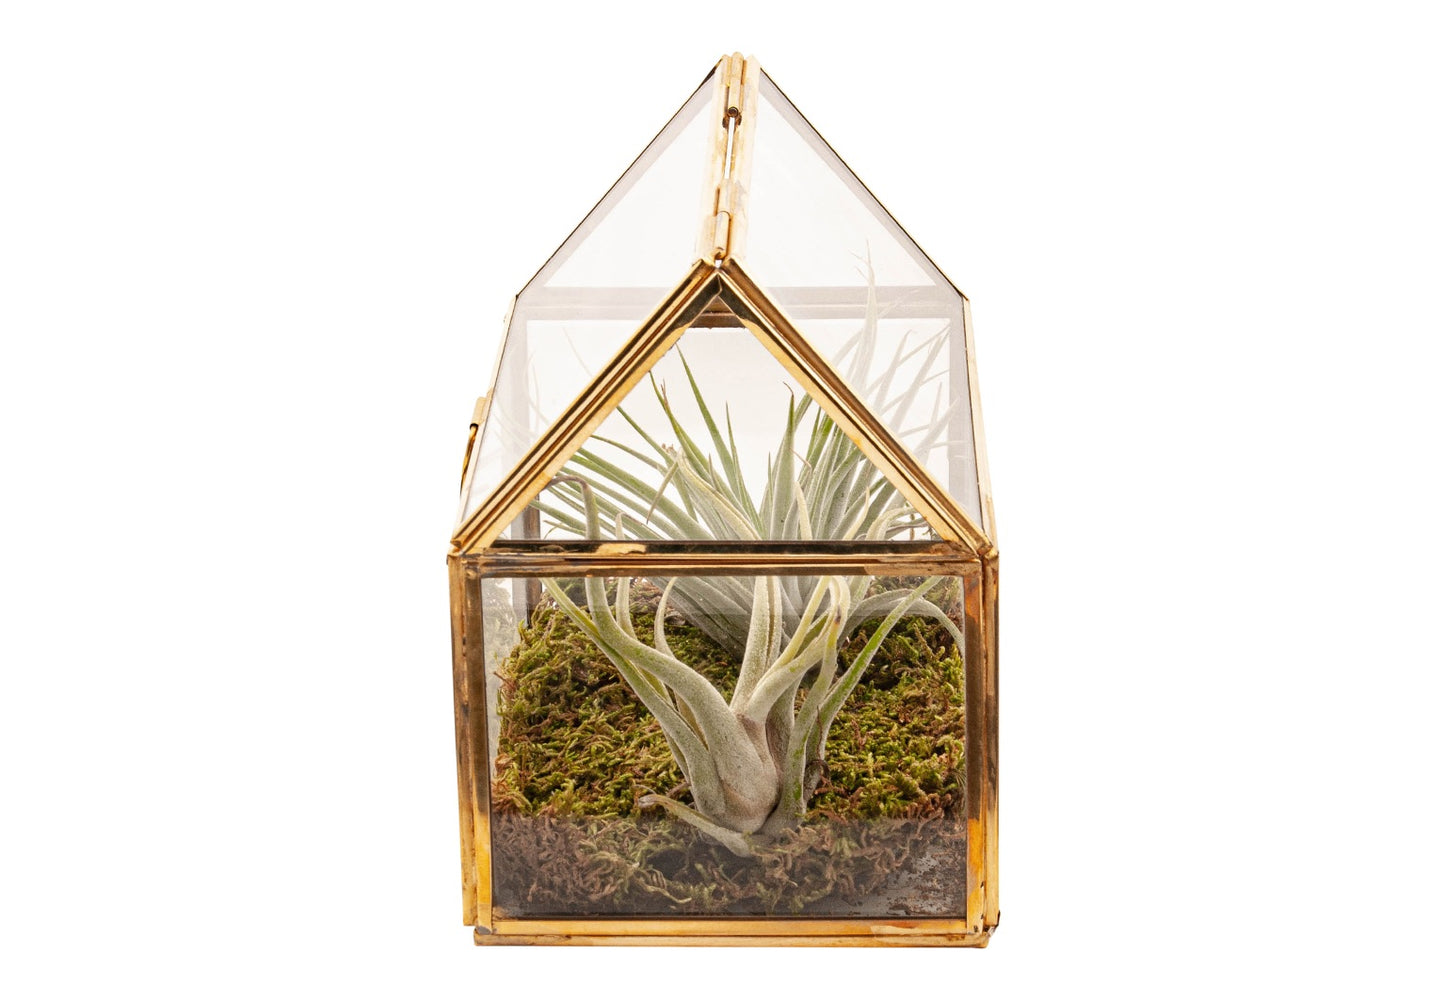 Glas terrarium met 2 tillandsia plantjes en plaatmos. Kasje is afgewerkt met goudkleurige lijsten